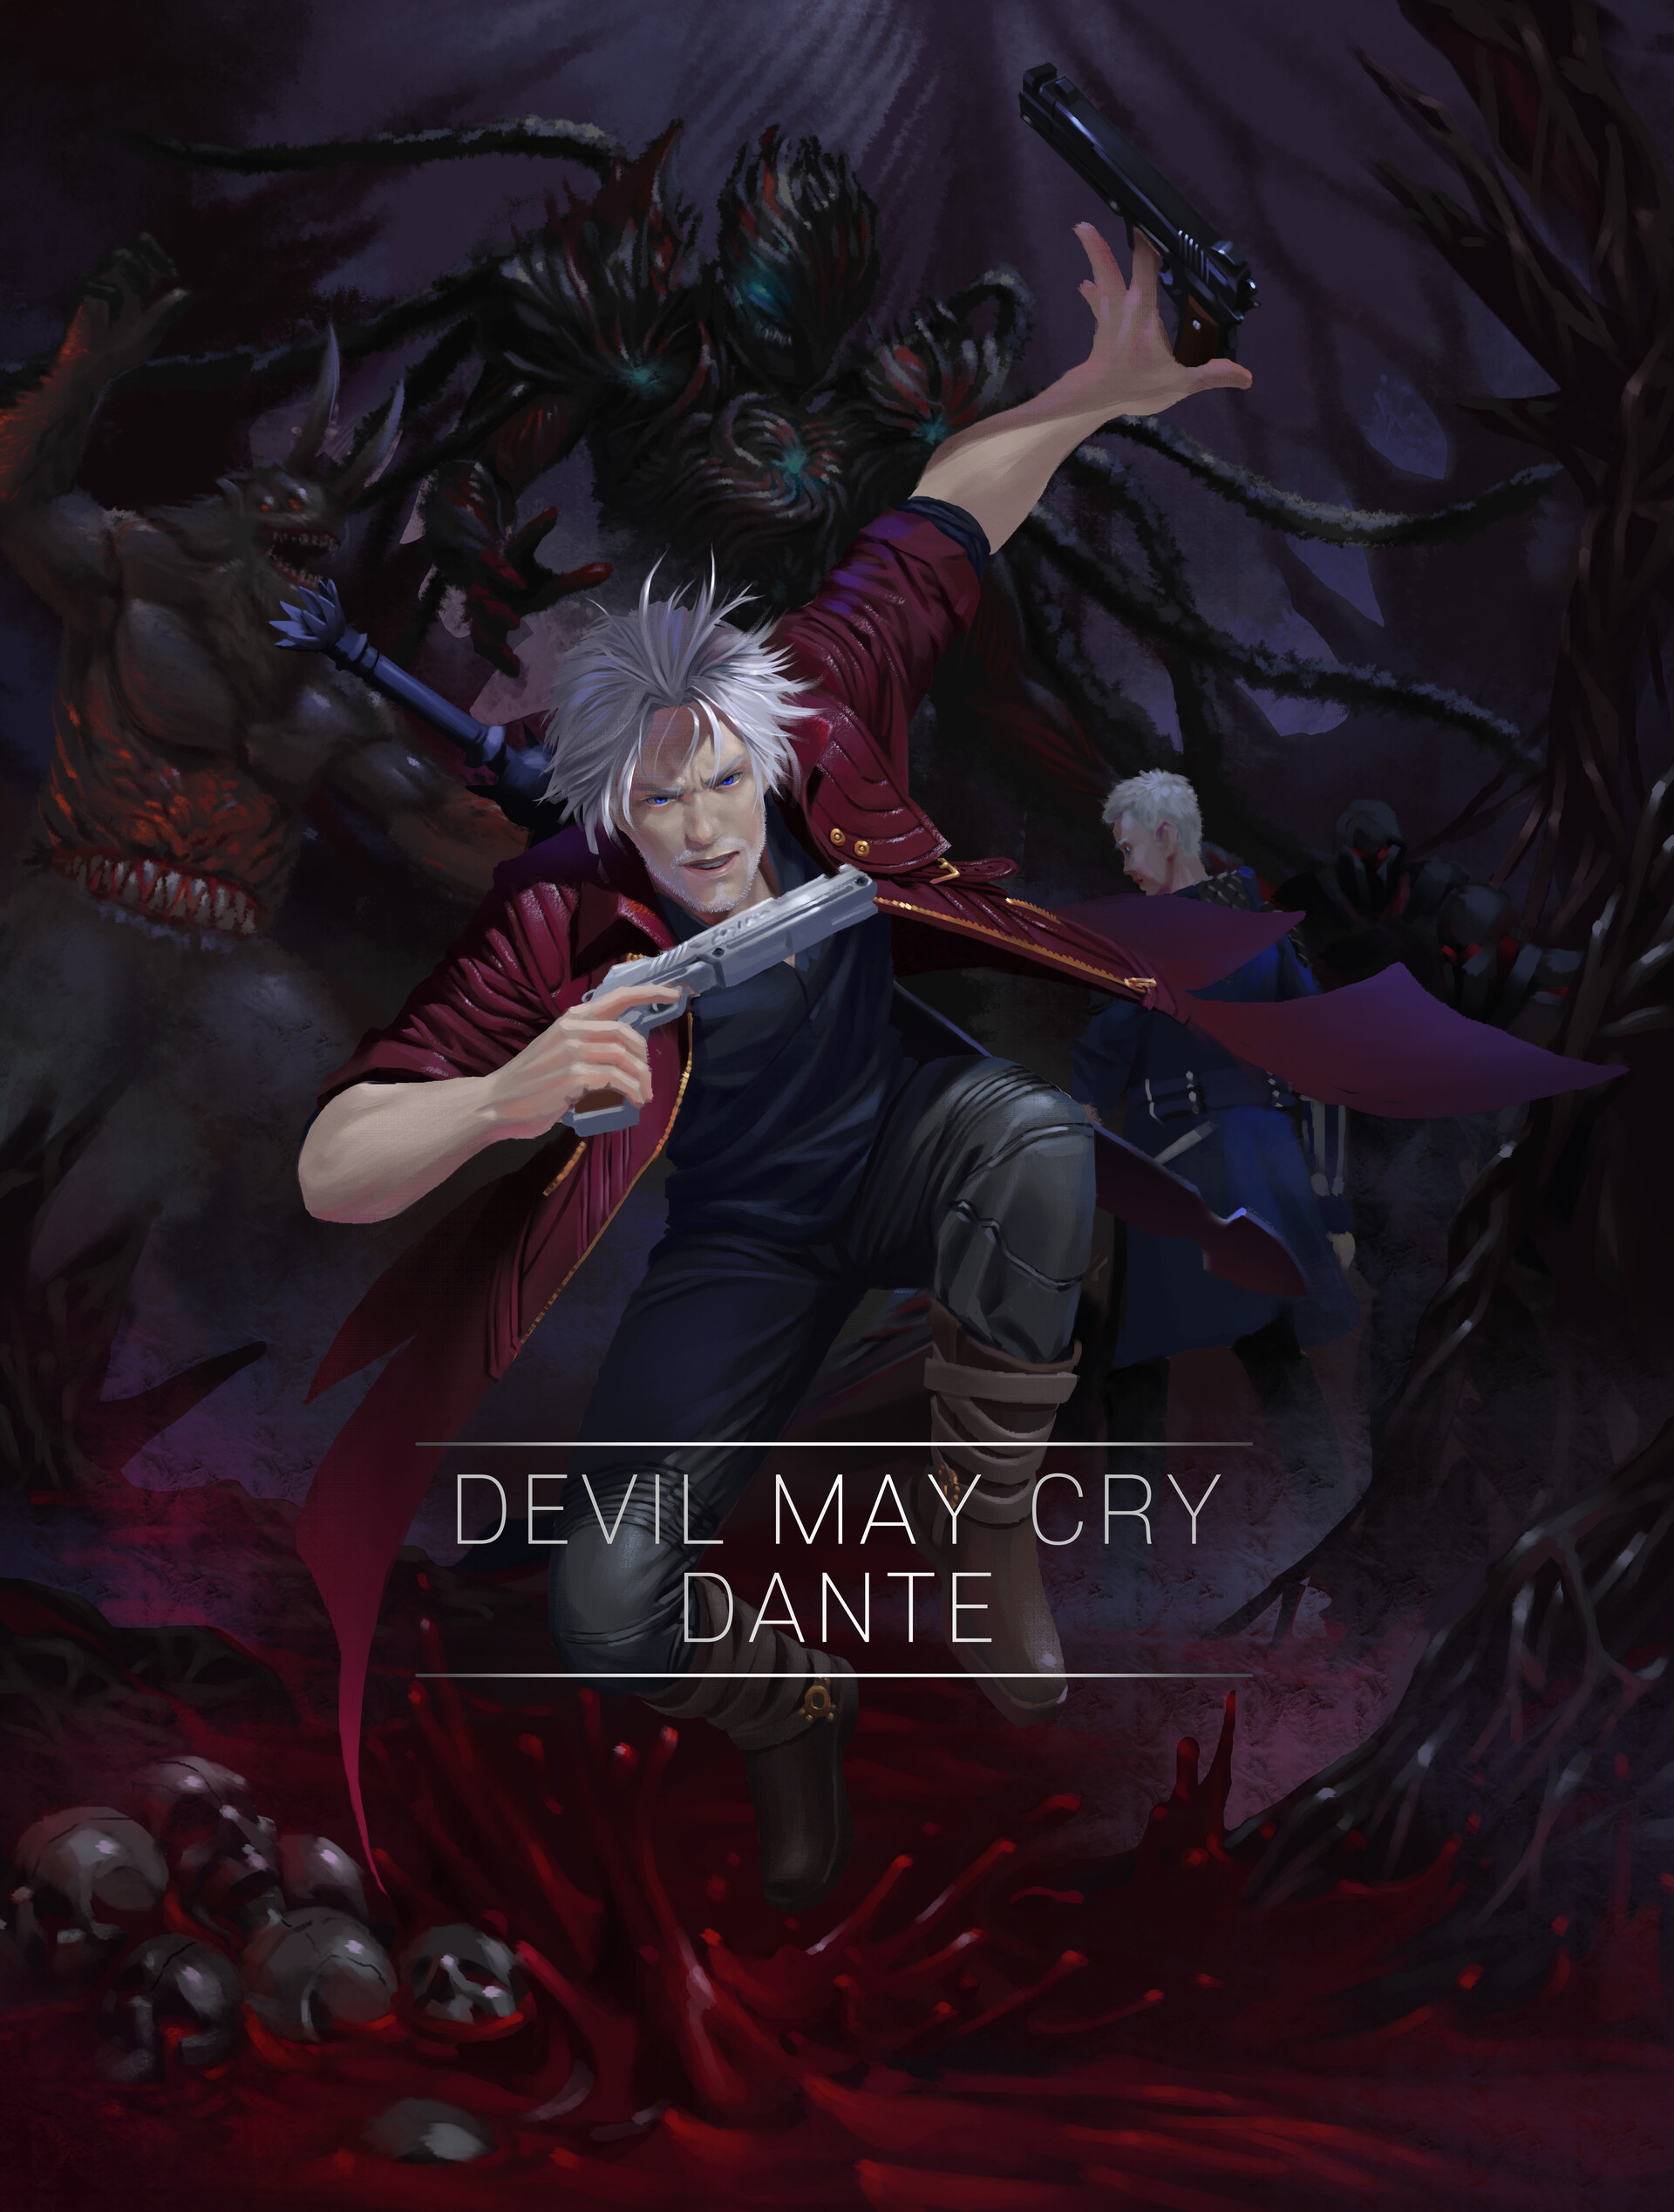 ArtStation - Dante Devil May Cry Fanart